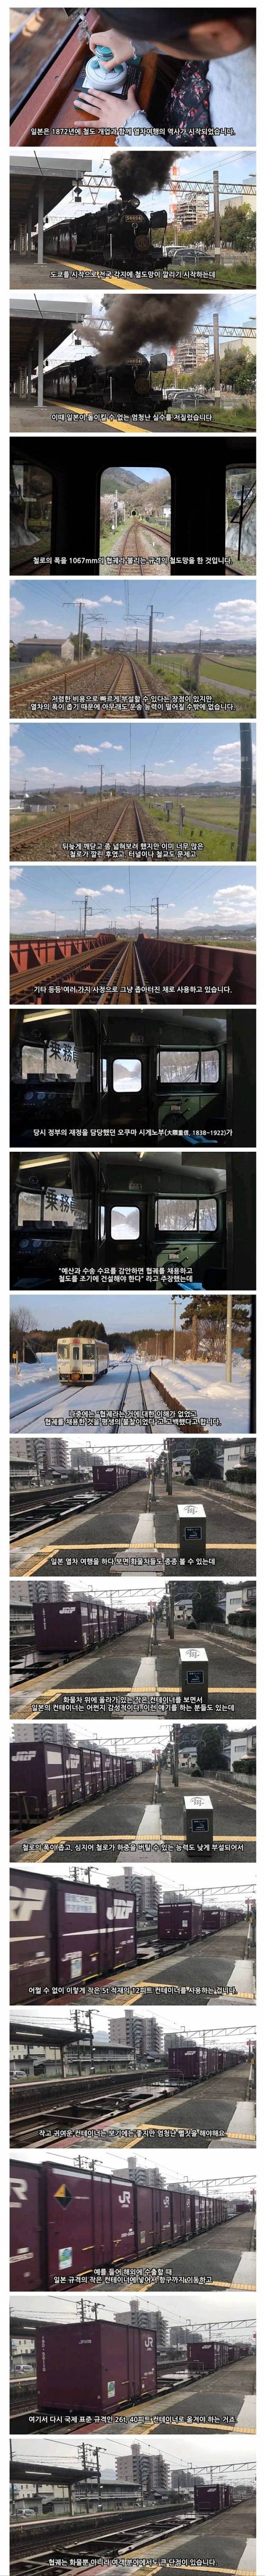 [스압] 일본 기차가 좁아터진 이유.jpg